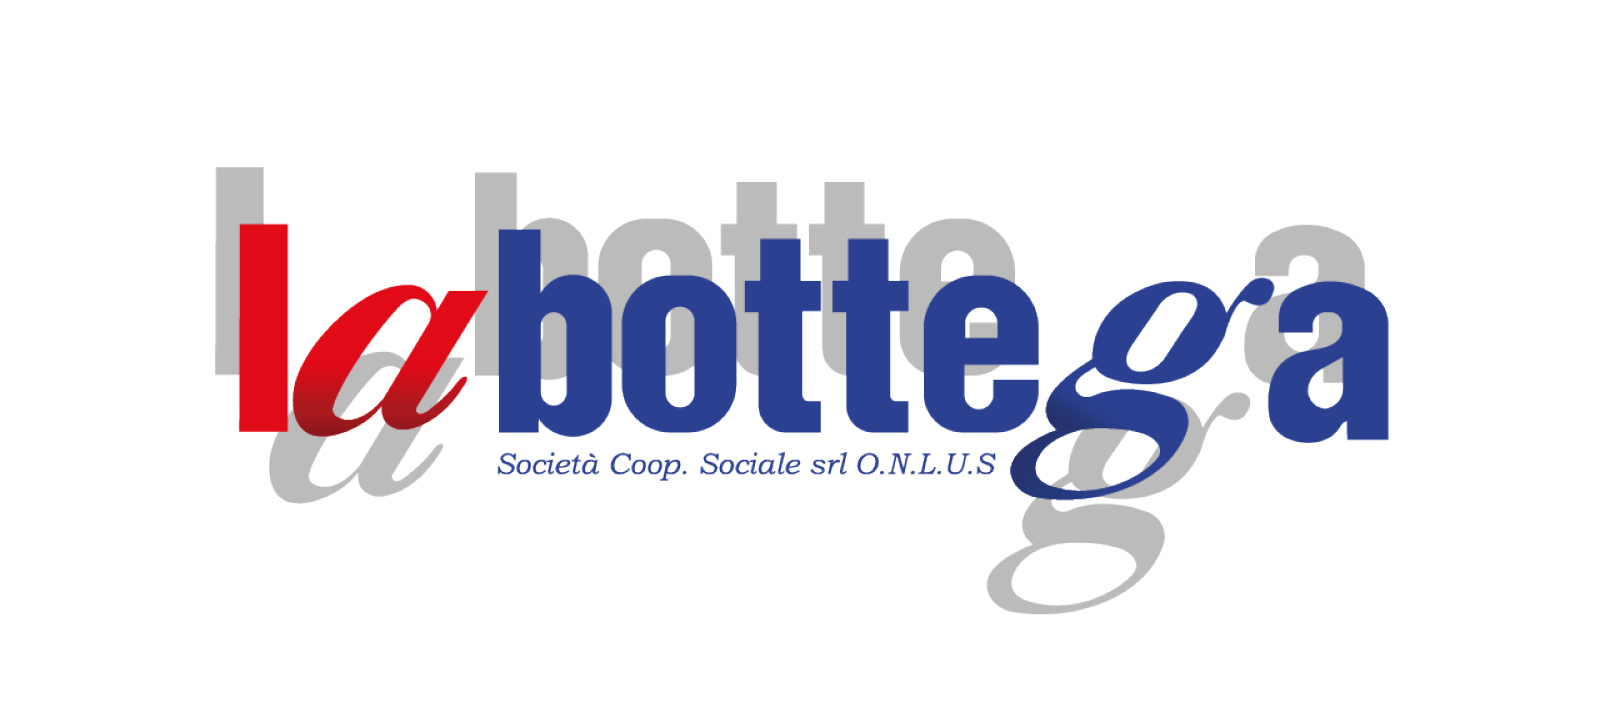 Logo La Bottega